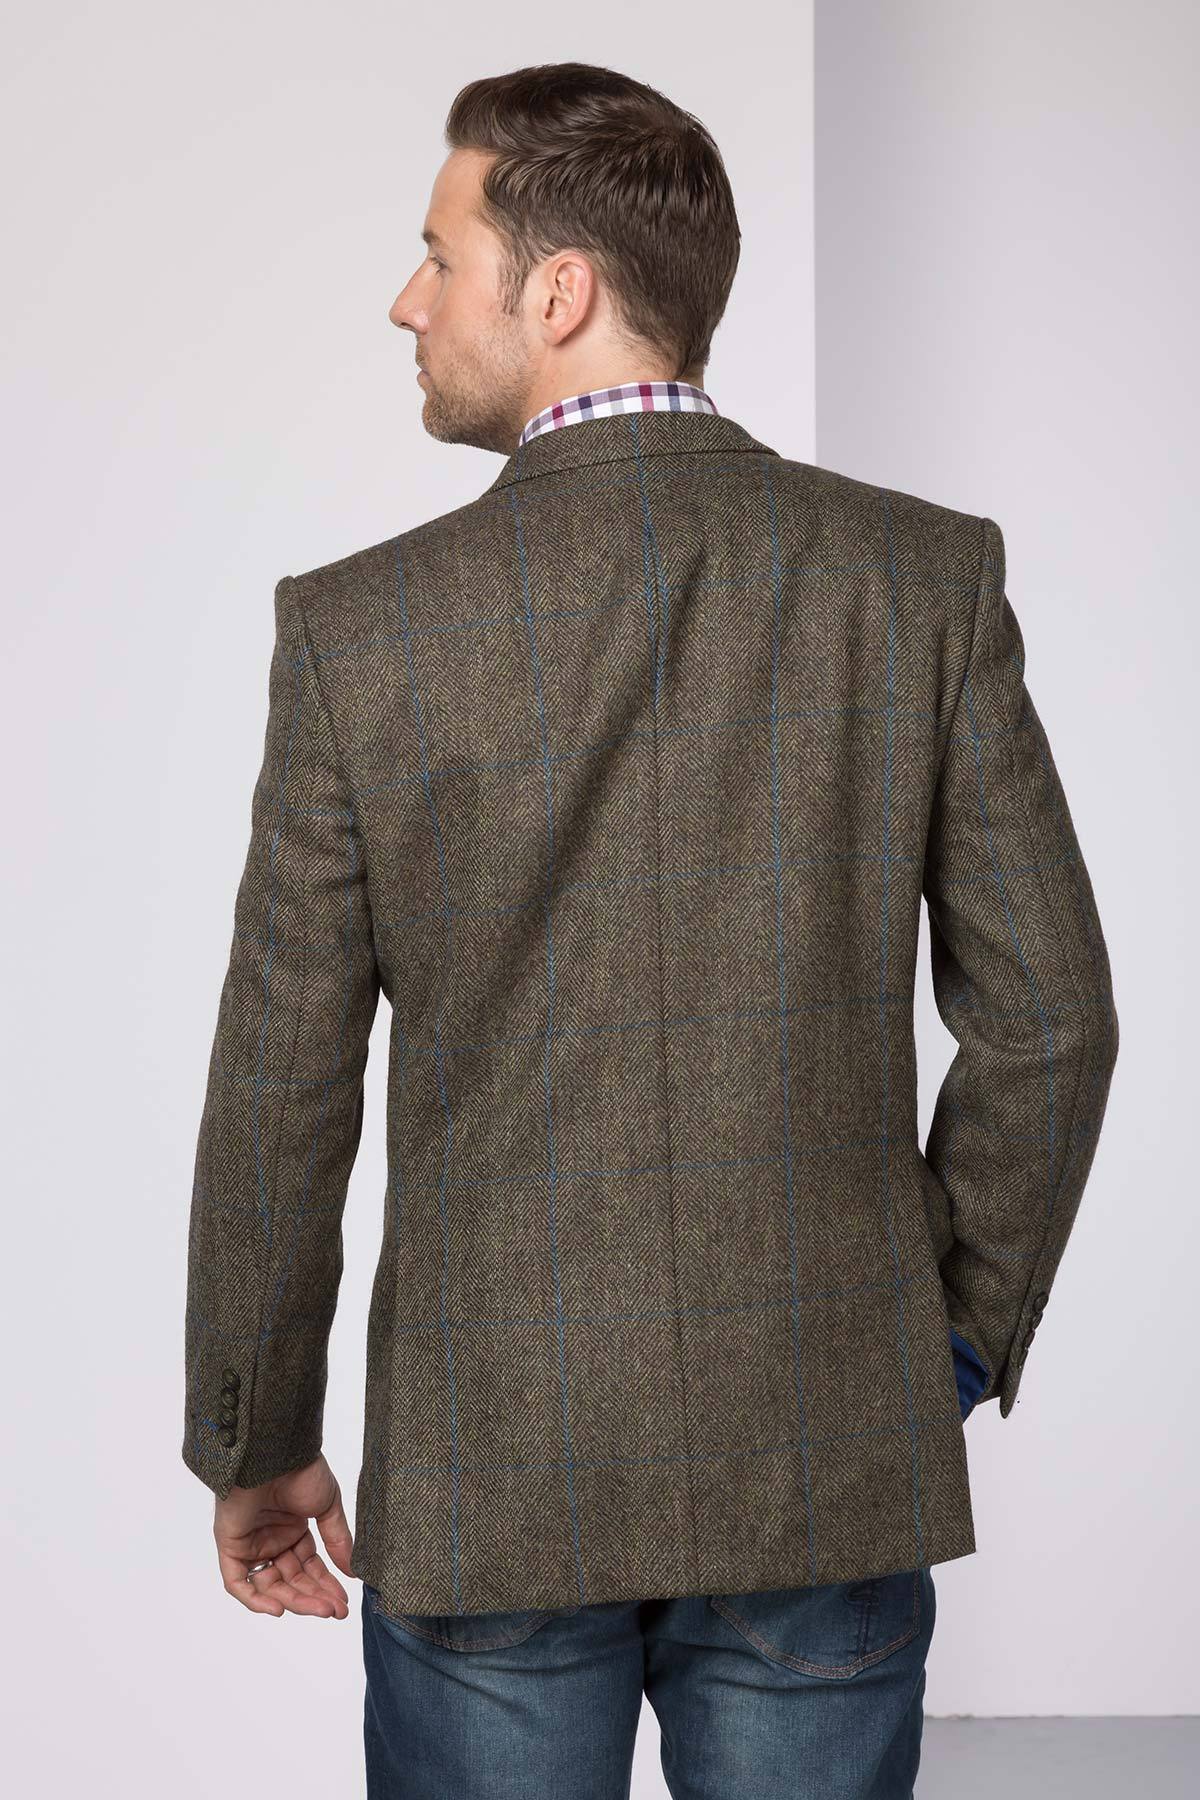 Mens Yorkshire Tweed Blazer UK | Slim Fitting Tweed Jacket | Rydale